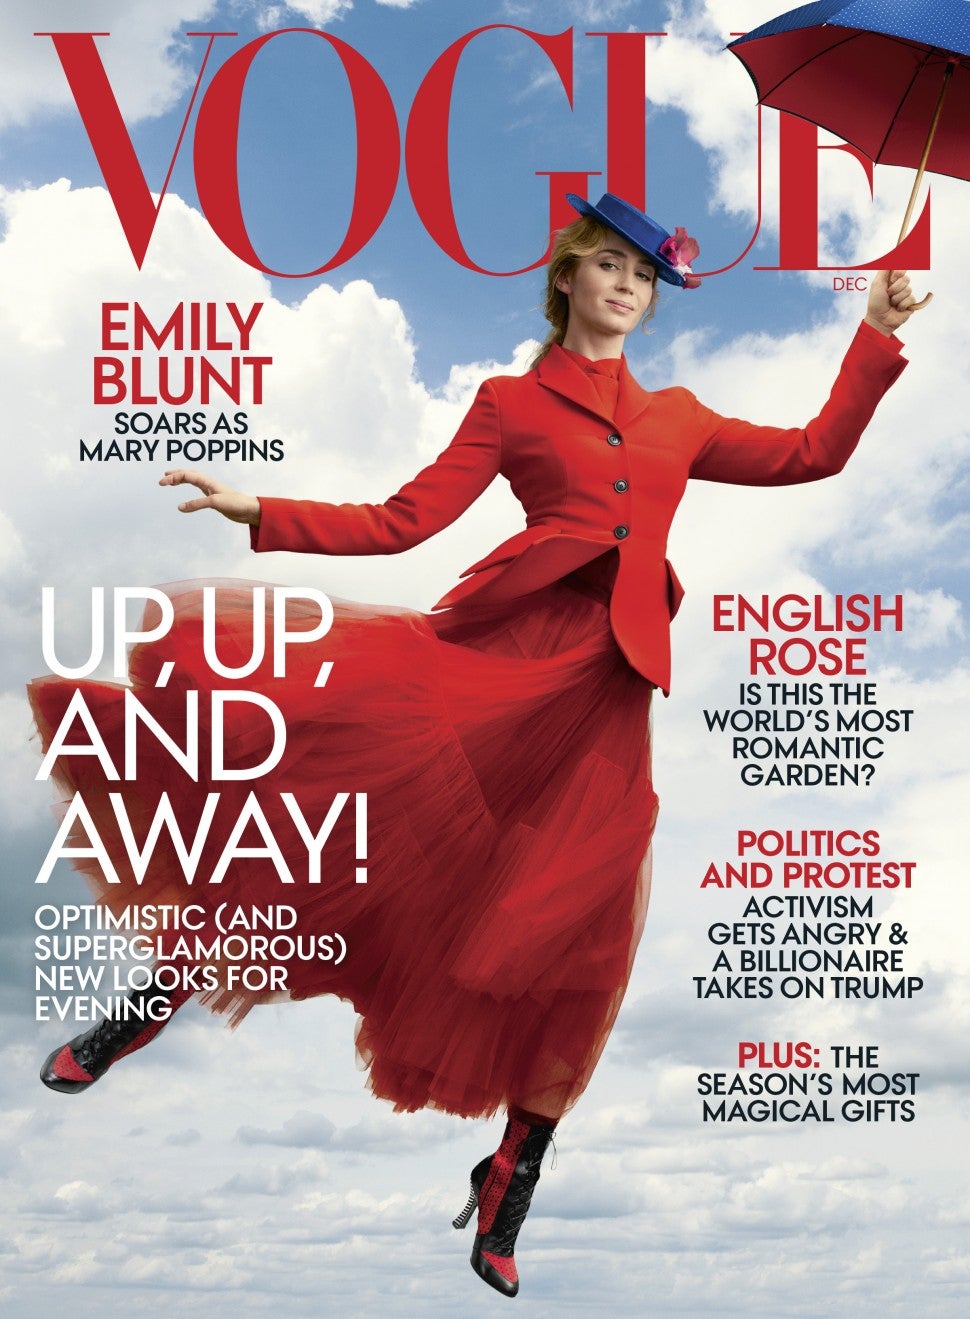 Emily Blunt December 2018 Vogue Cover